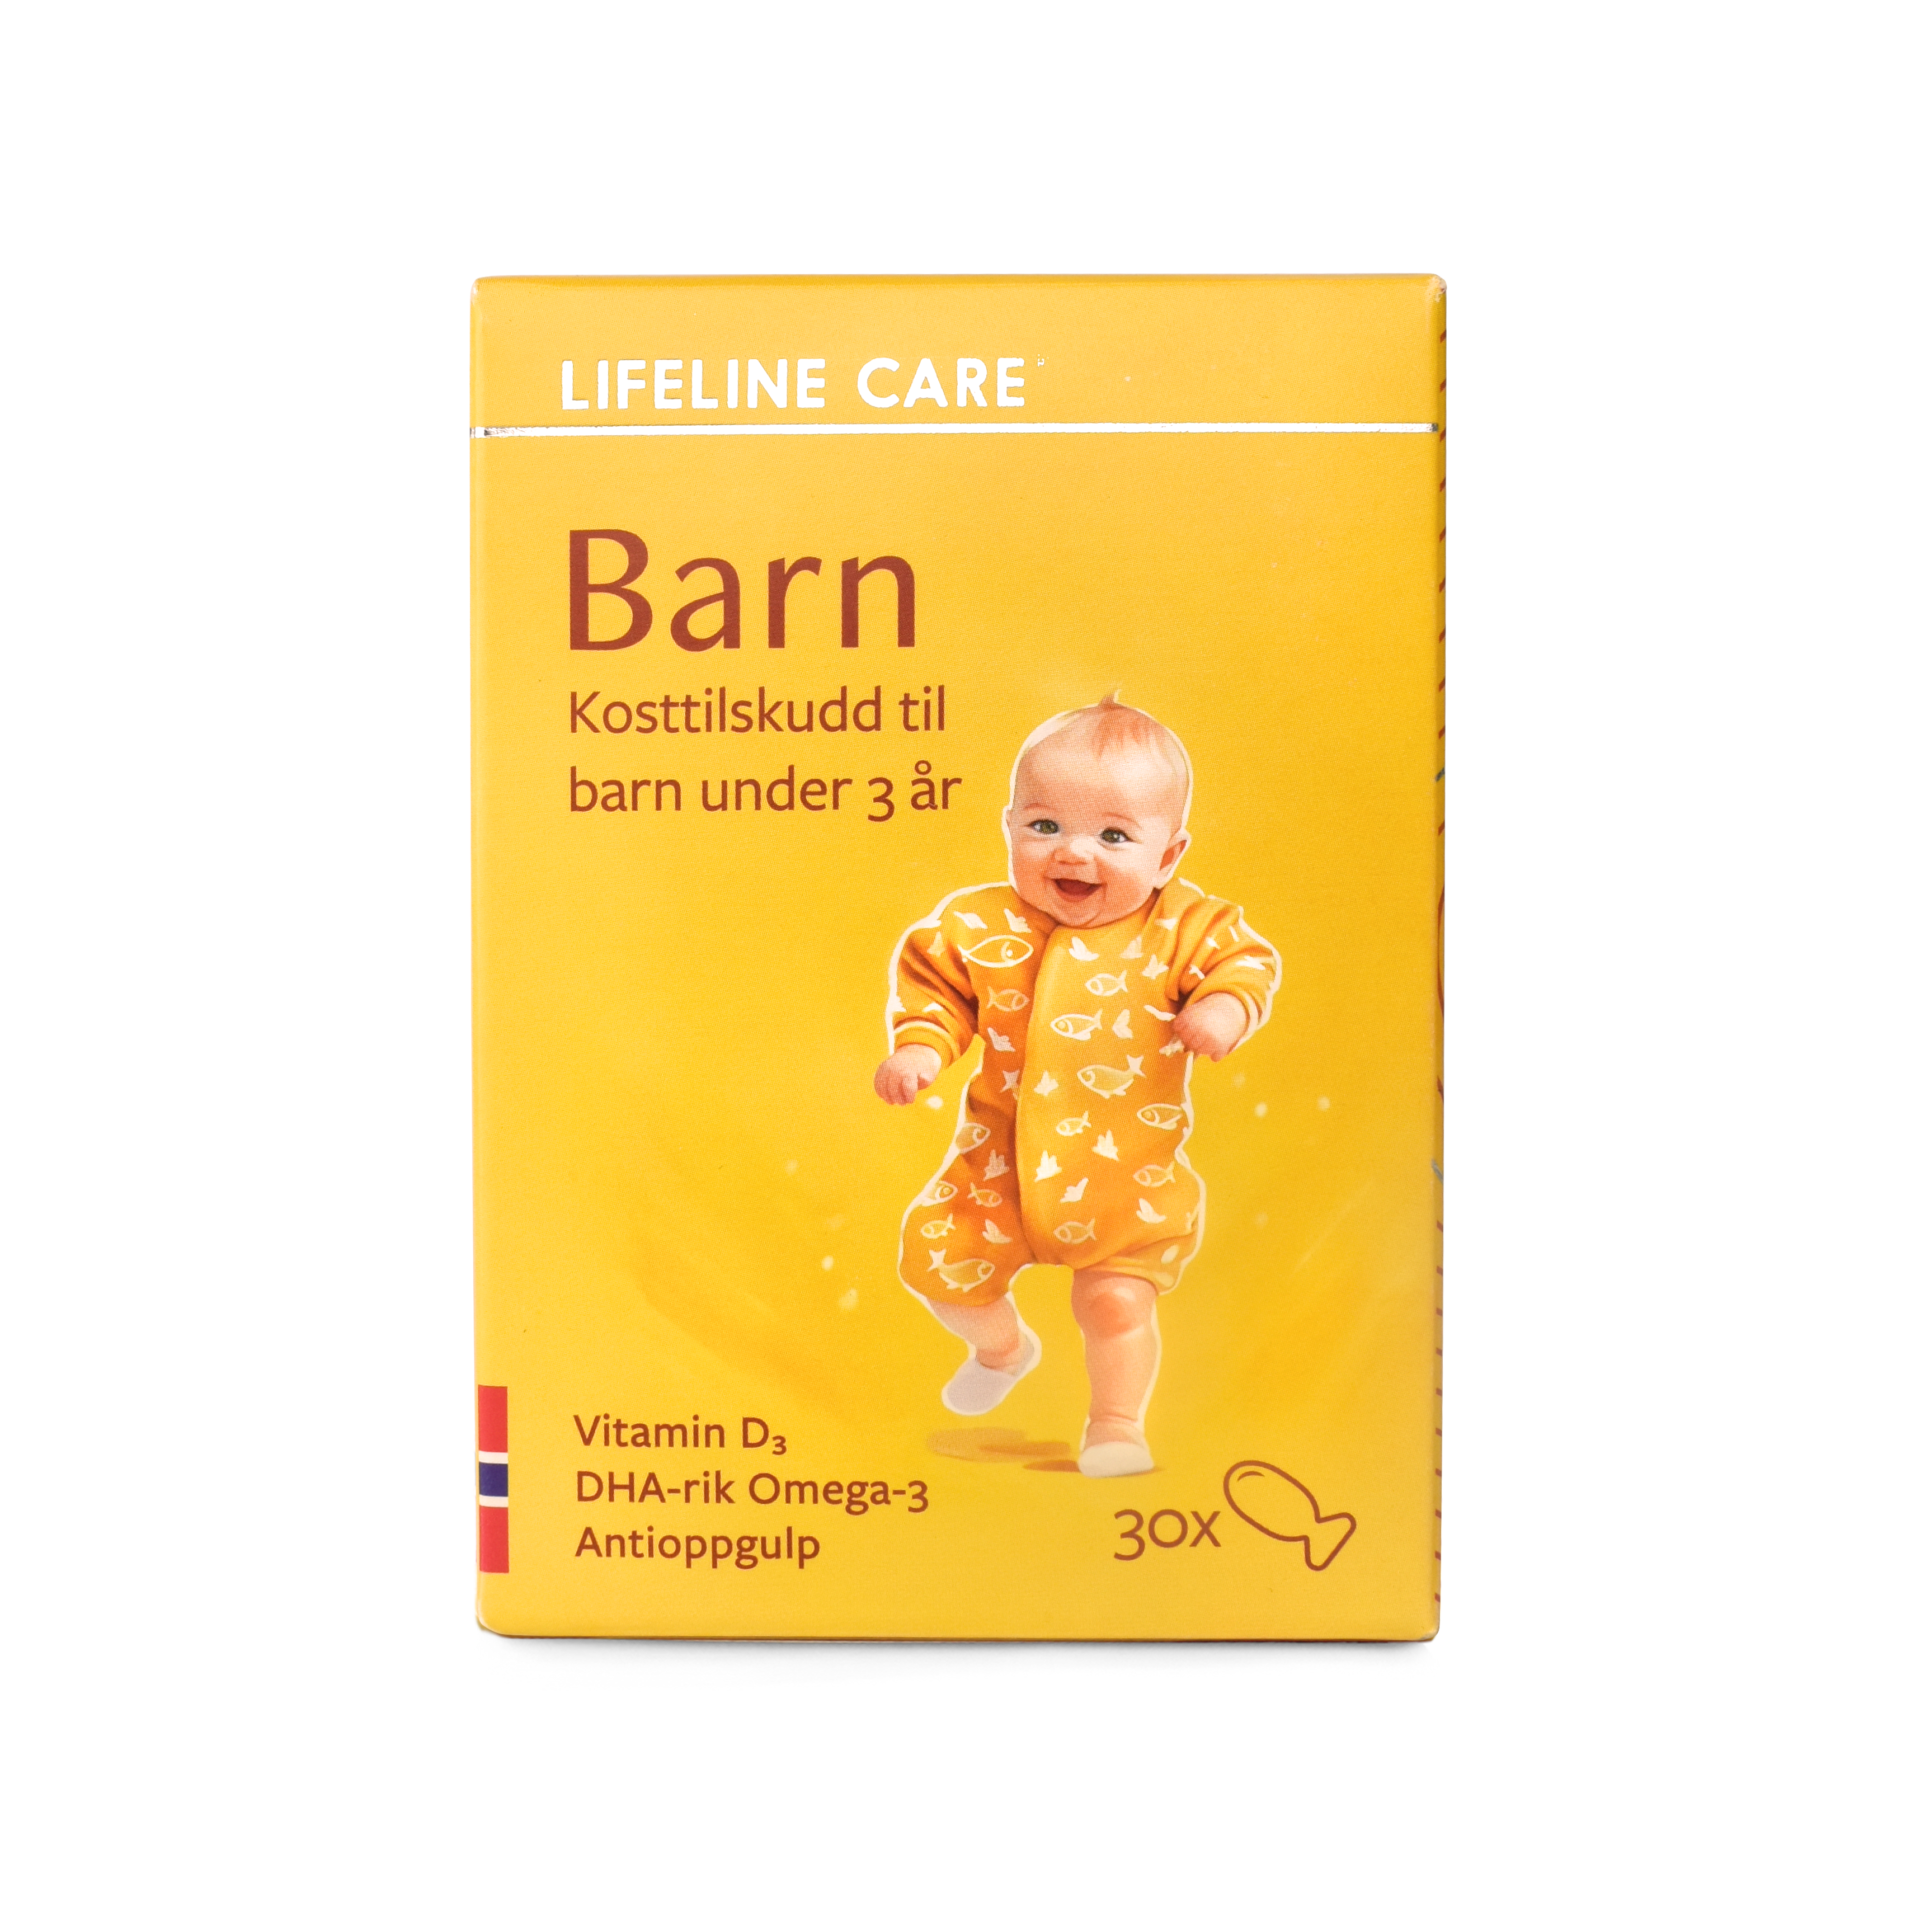 Lifeline Care Barn